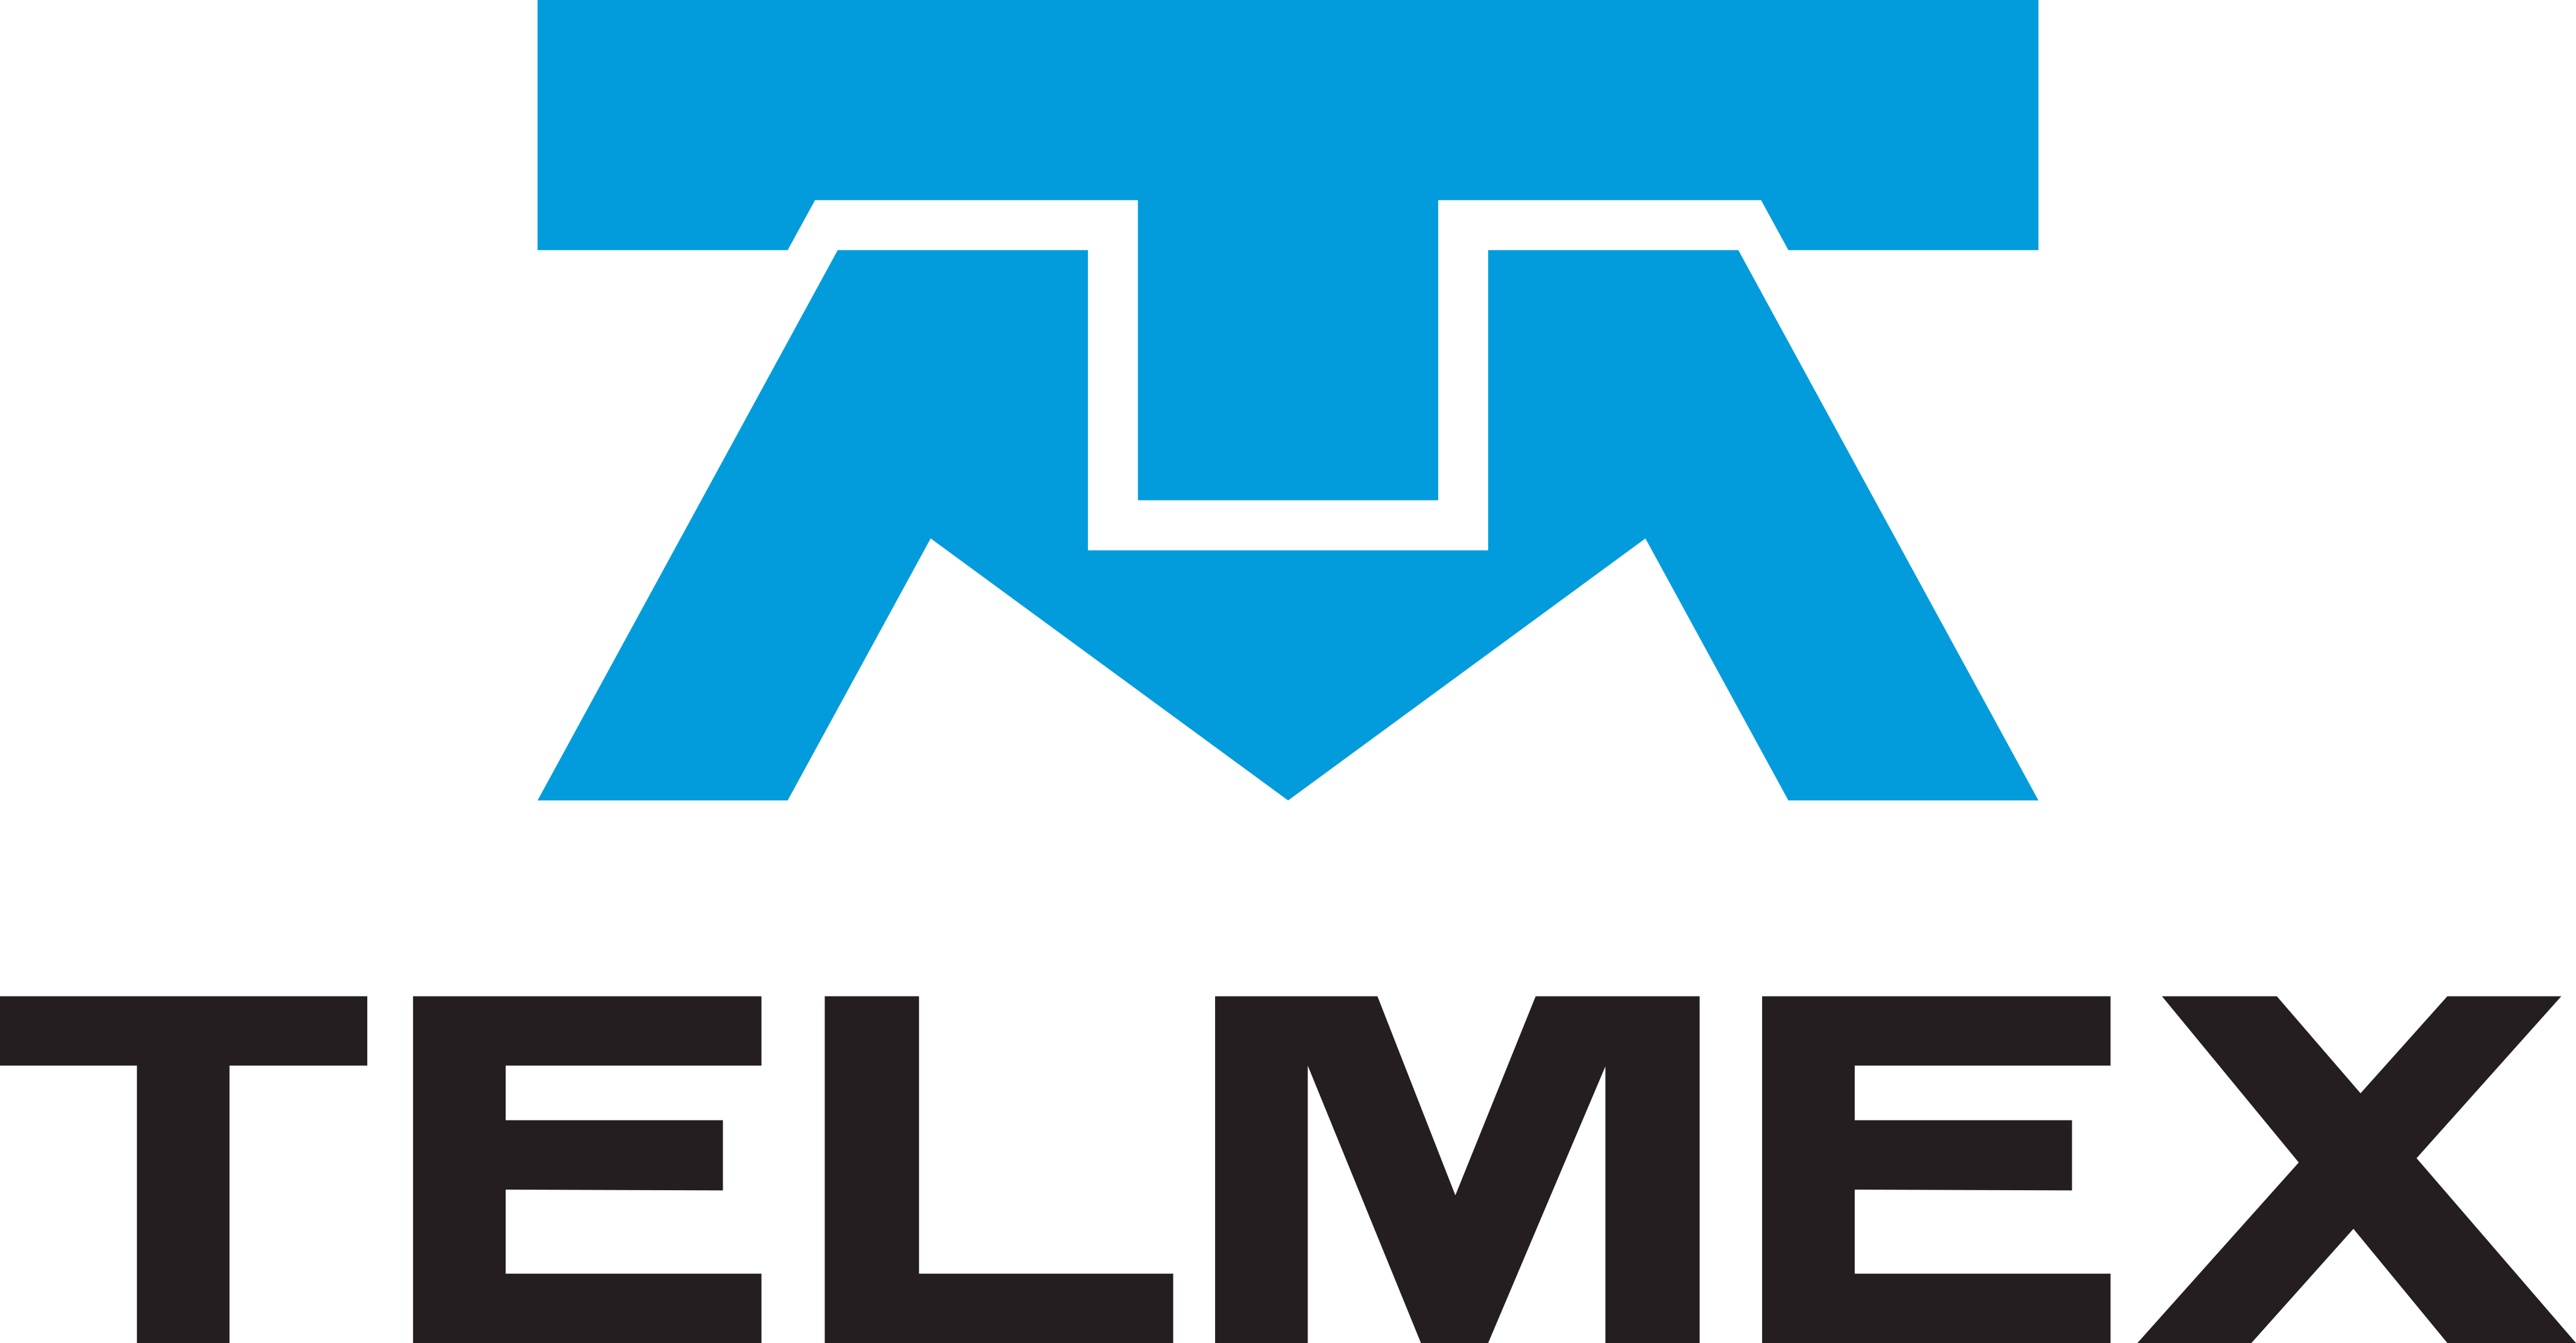 telmex logo 1 - Telmex Logo